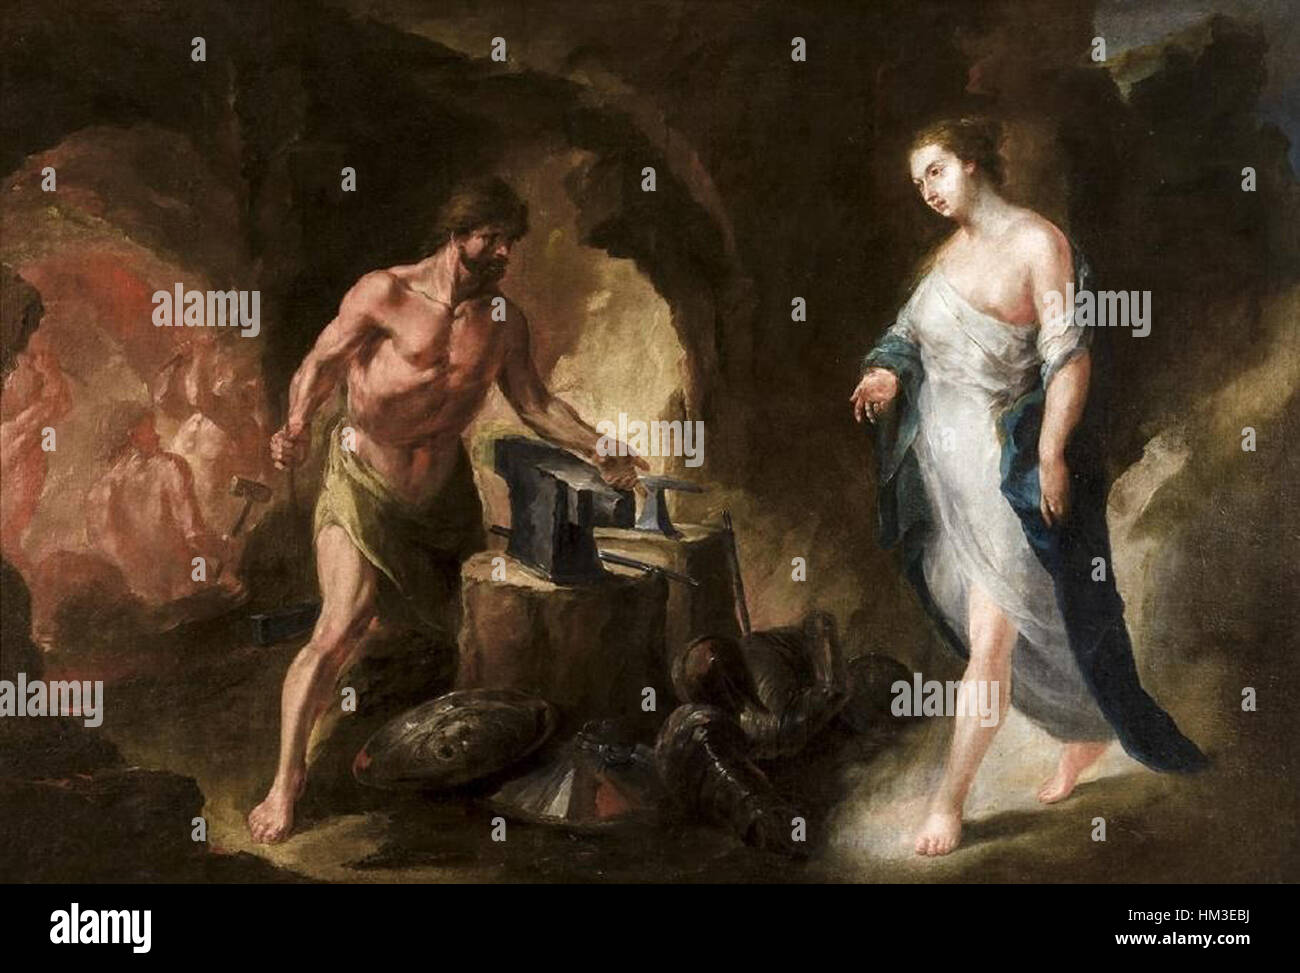 La fragua de Vulcano o Venus y Vulcano, de Juan de Espinal (Museo de Bellas  Artes de Sevilla Stock Photo - Alamy